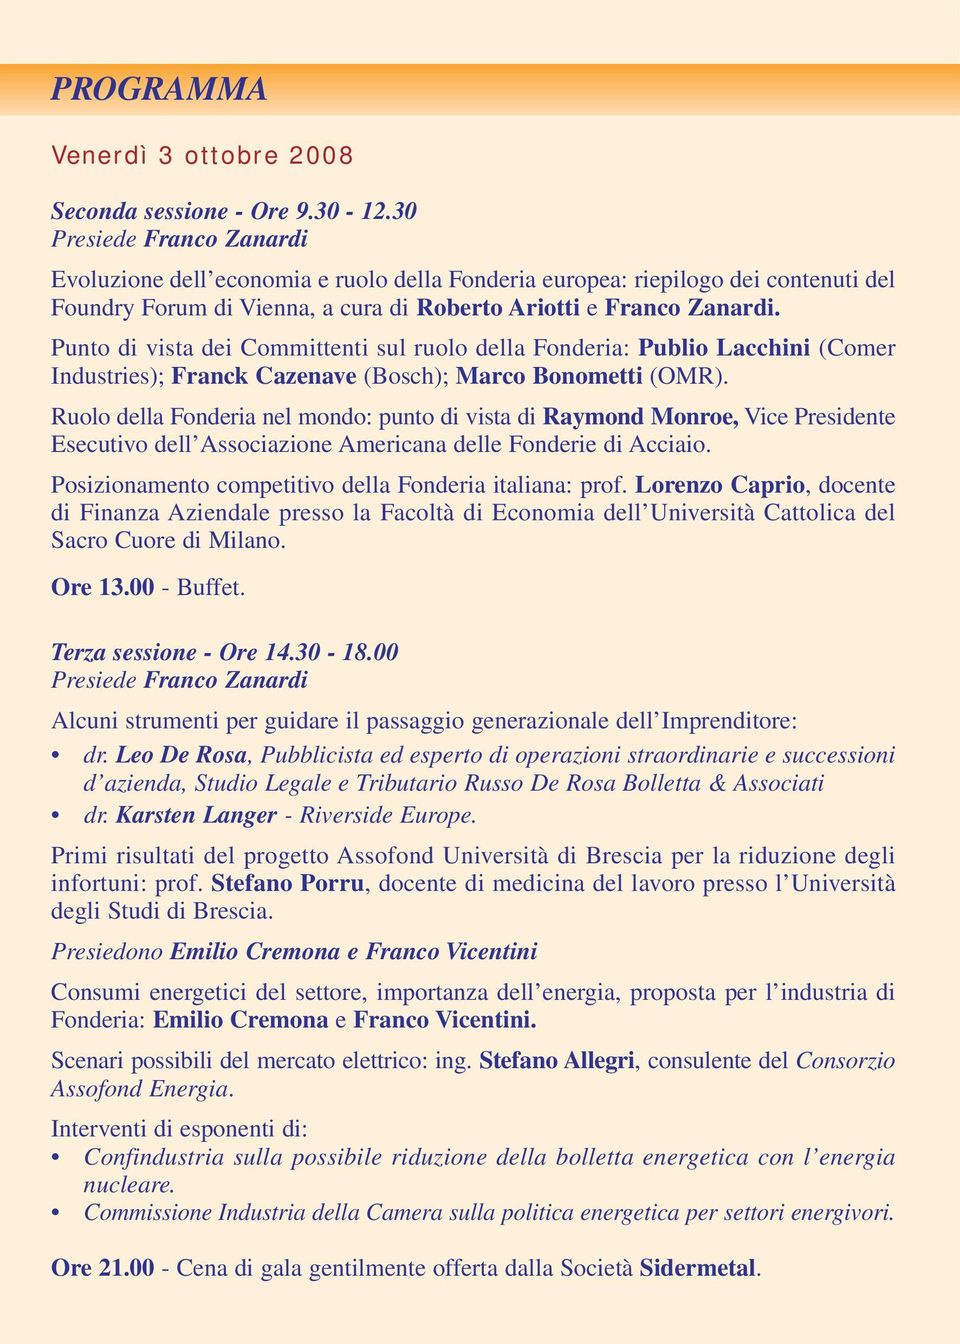 Punto di vista dei Committenti sul ruolo della Fonderia: Publio Lacchini (Comer Industries); Franck Cazenave (Bosch); Marco Bonometti (OMR).